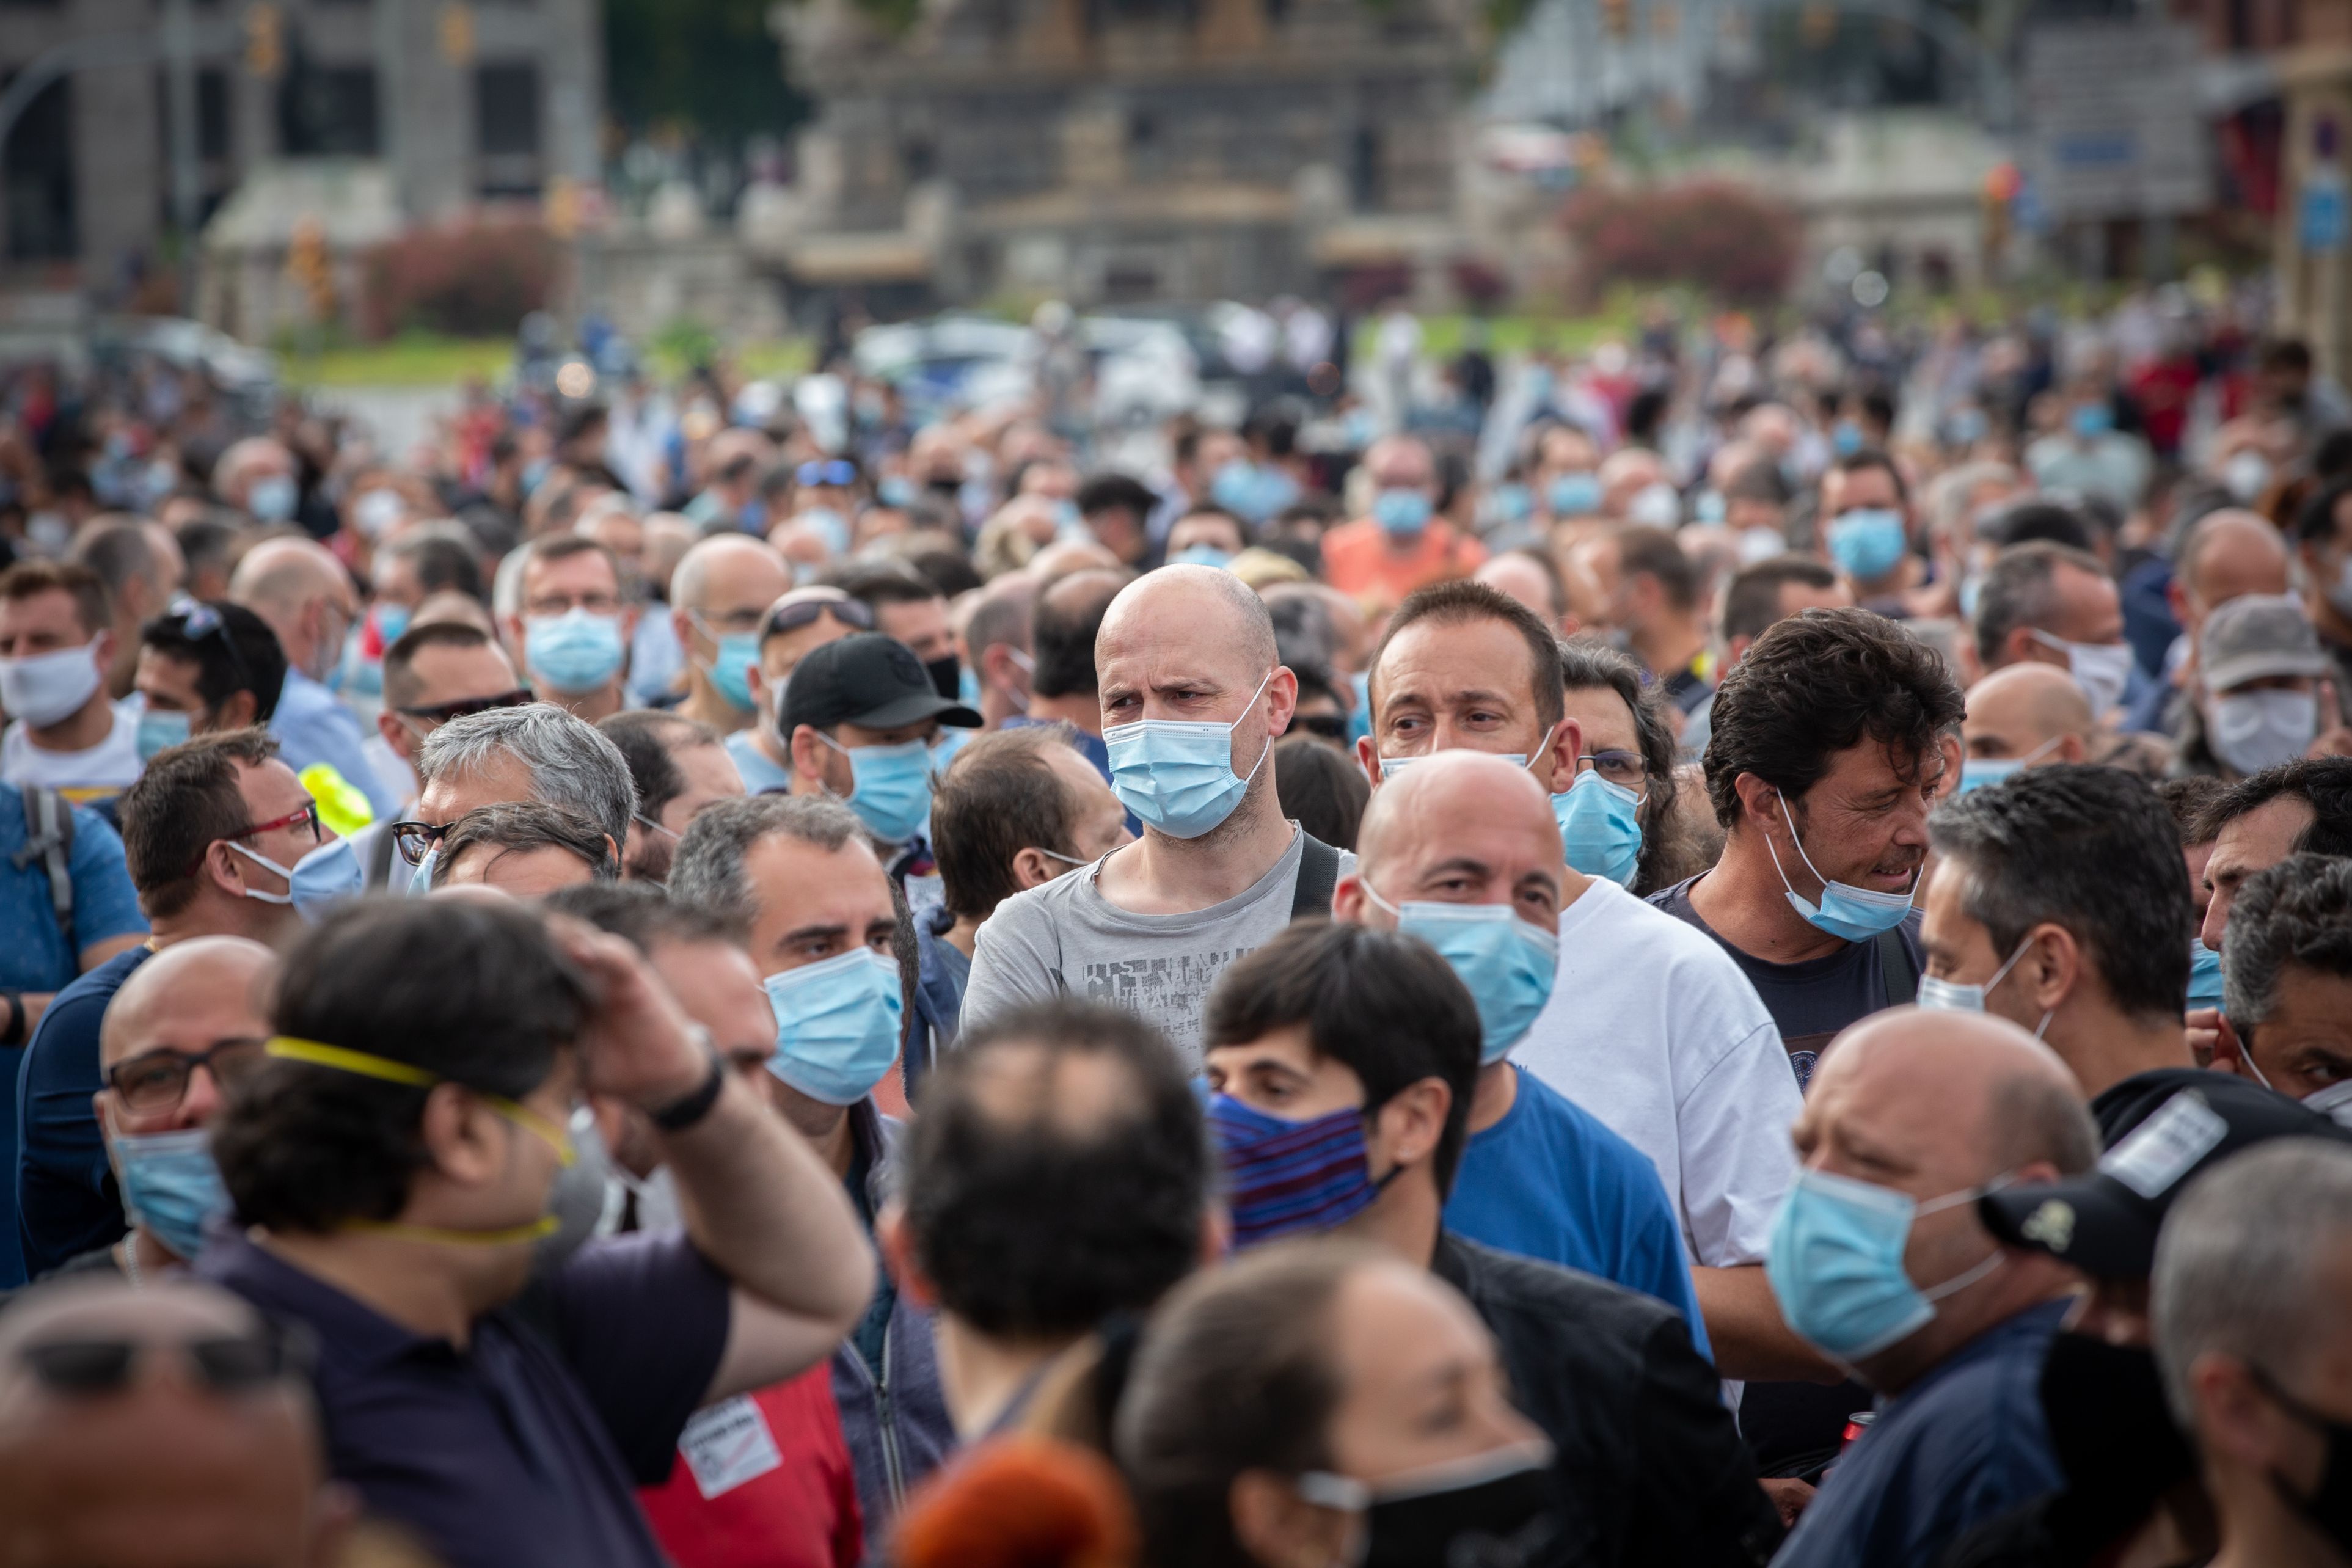 Organizaţia Mondială a Sănătăţii este acuzată că ar fi conspirat cu Italia pentru a elimina un raport referitor la gestionarea defectuoasă a pandemiei